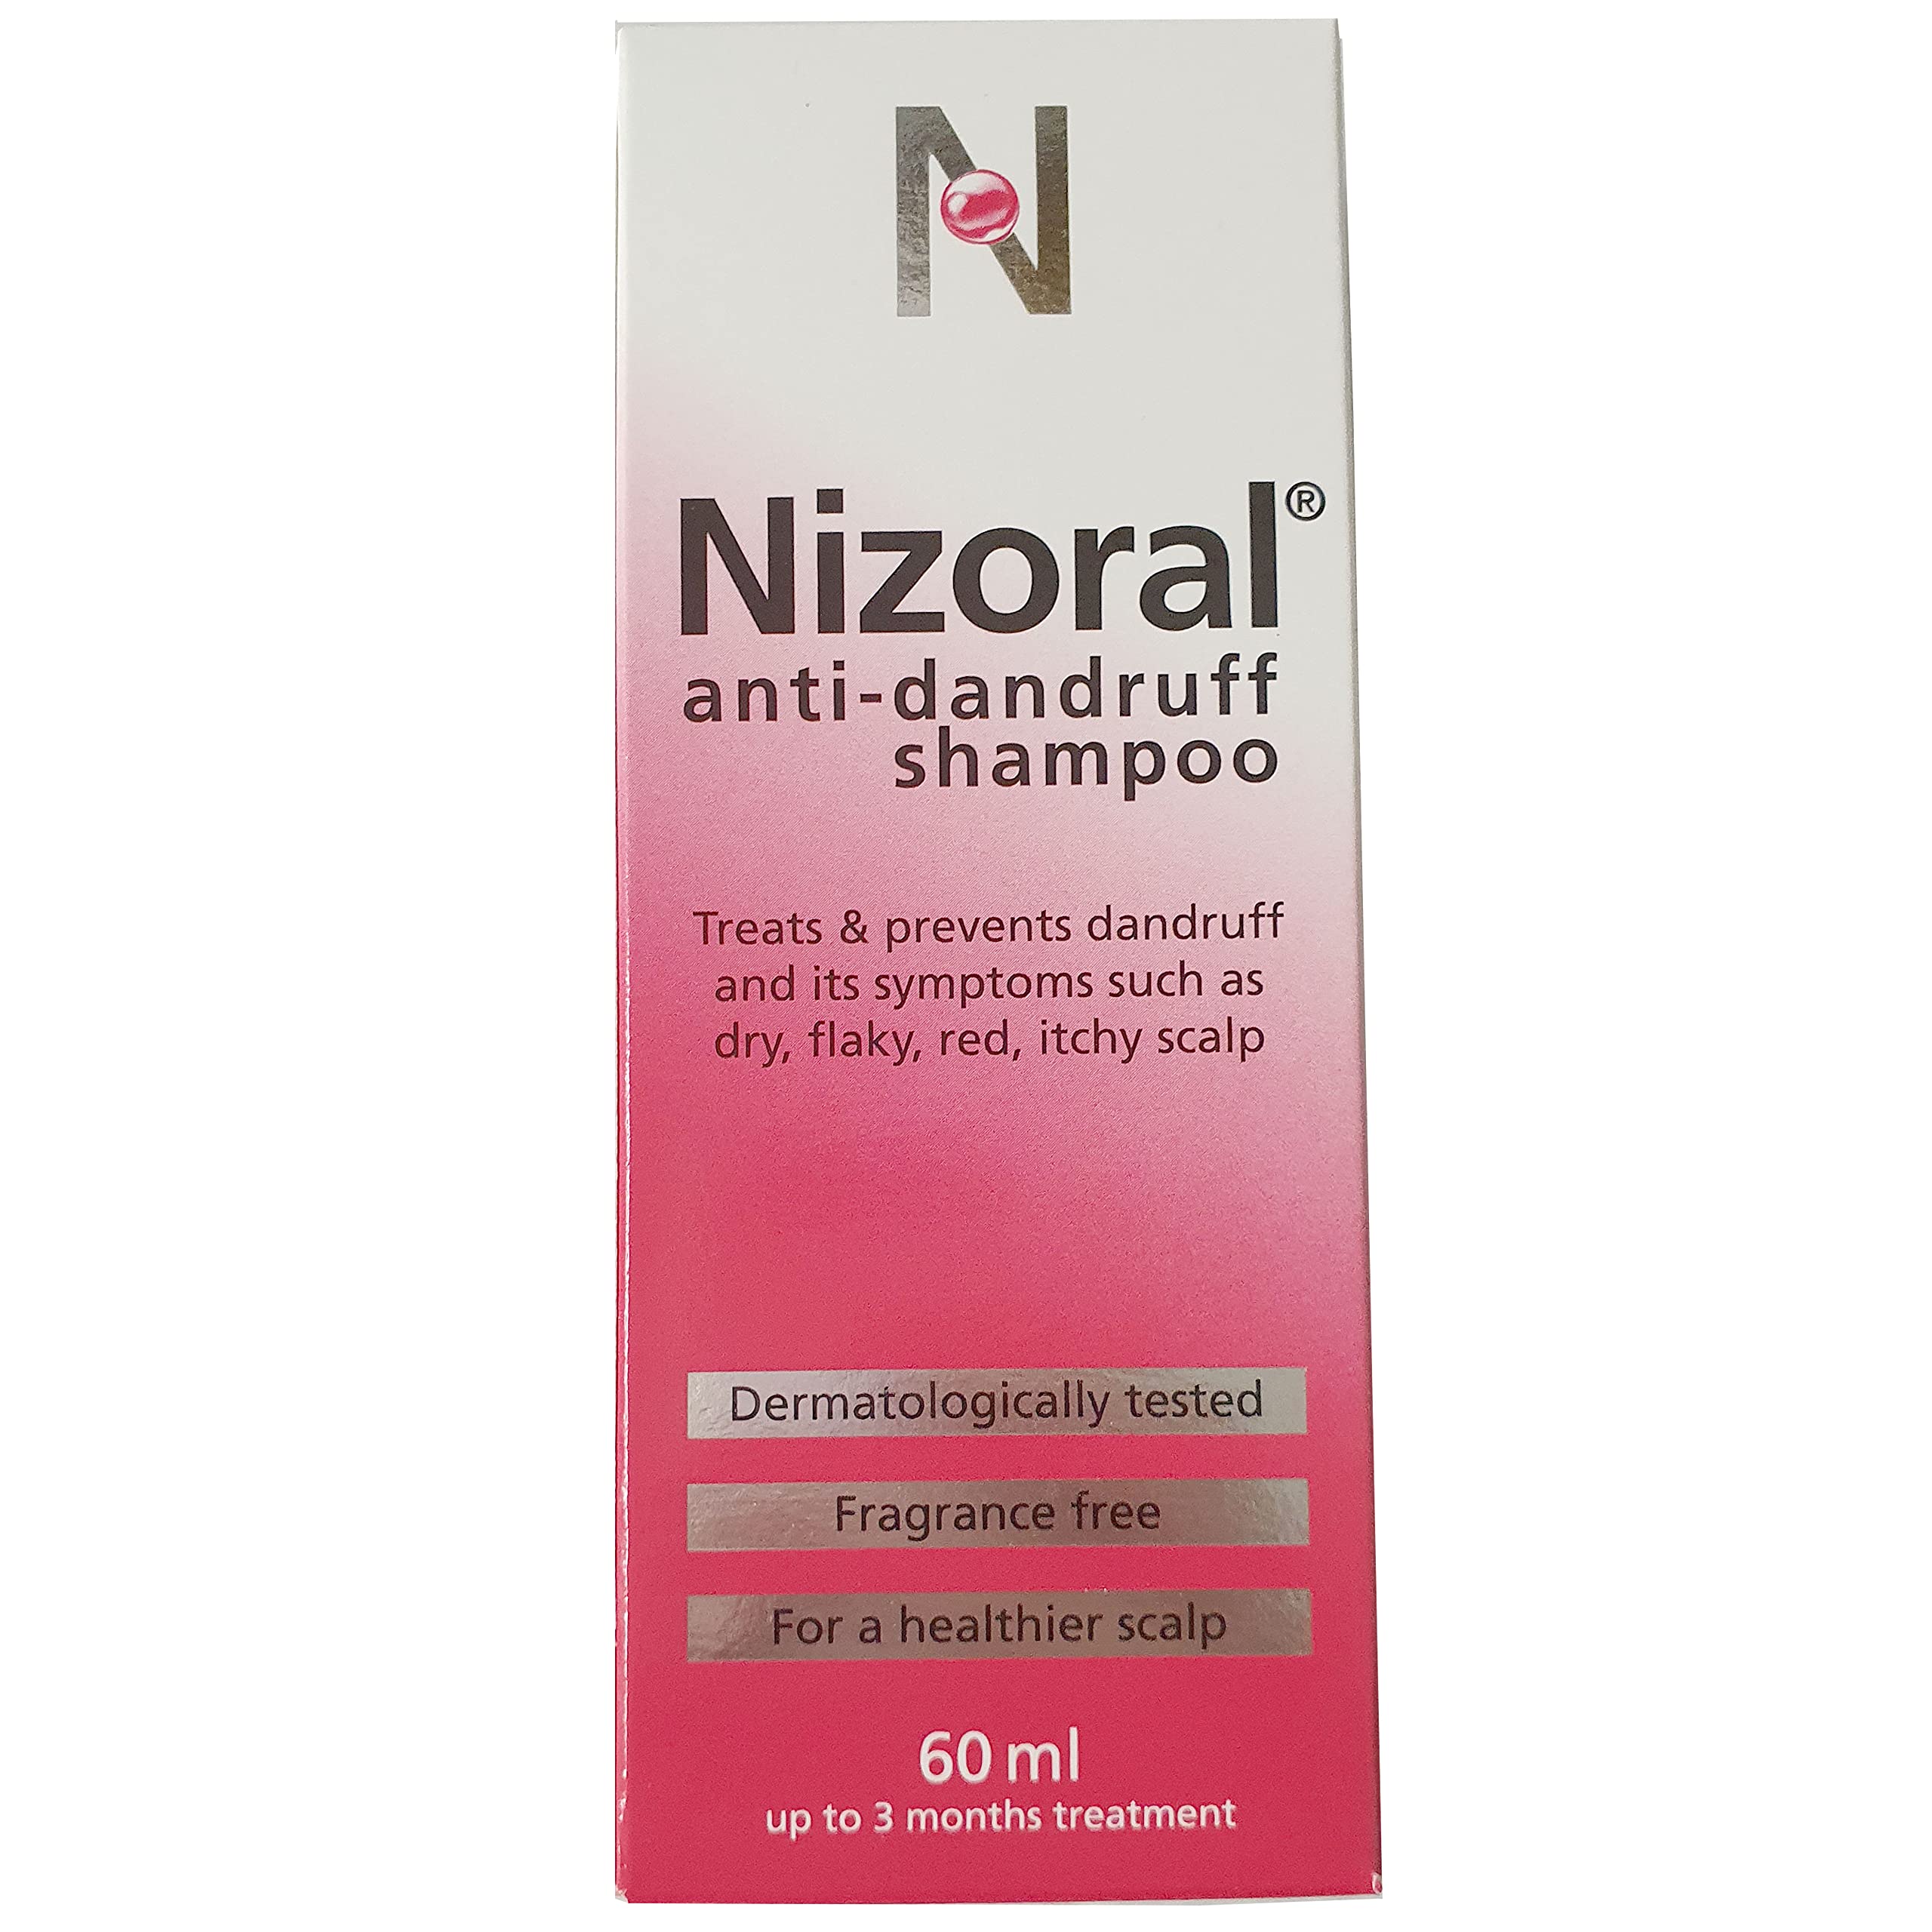 Nizoral Anti Dandruff Shampoo (60ml) - Pack of 6